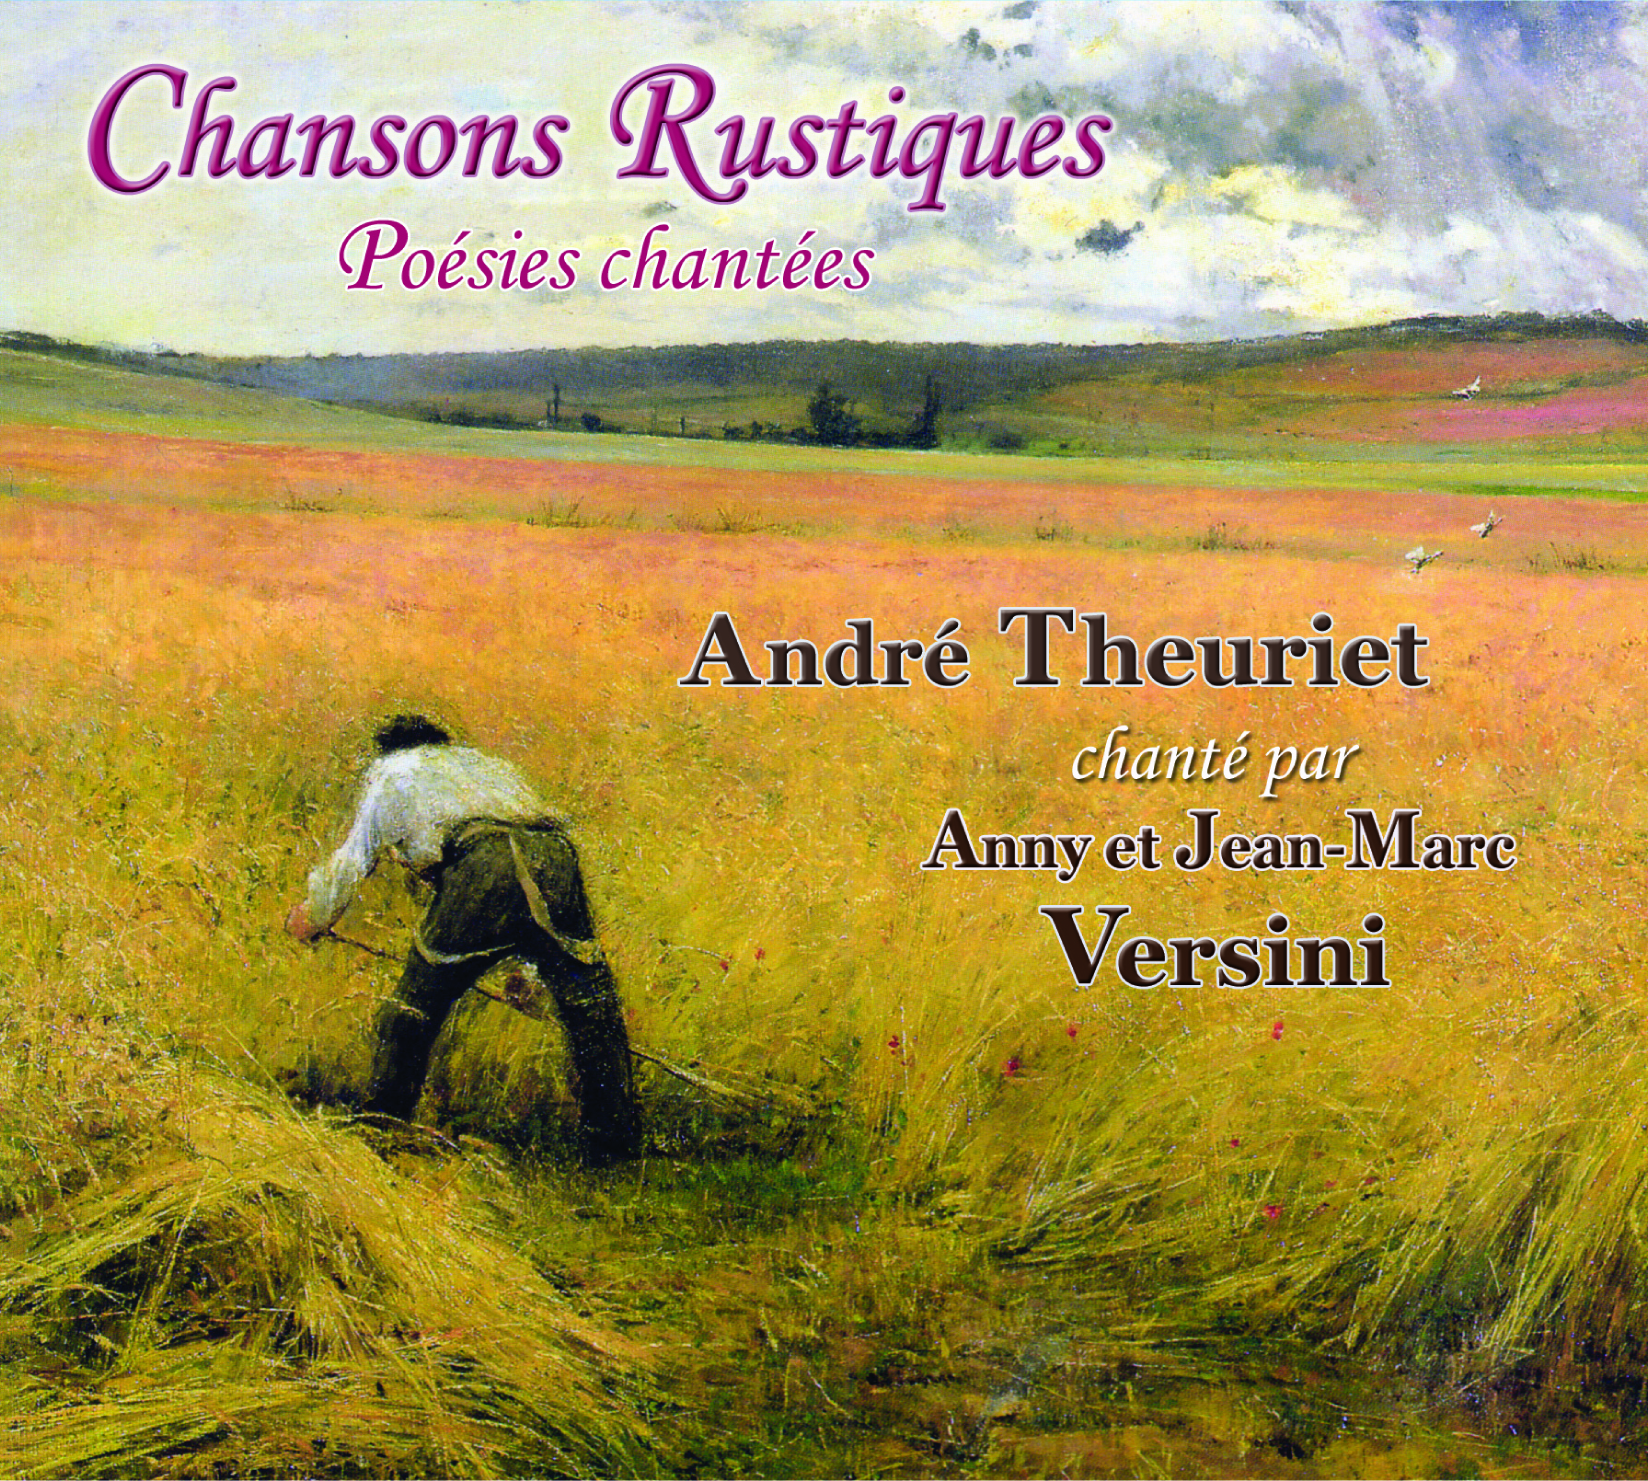 Chansons rustiques poésies chantées : André Theuriet chanté par Anny et Jean-Marc Versini Anny et Jean-Marc Versini, ens. voc. & instr.